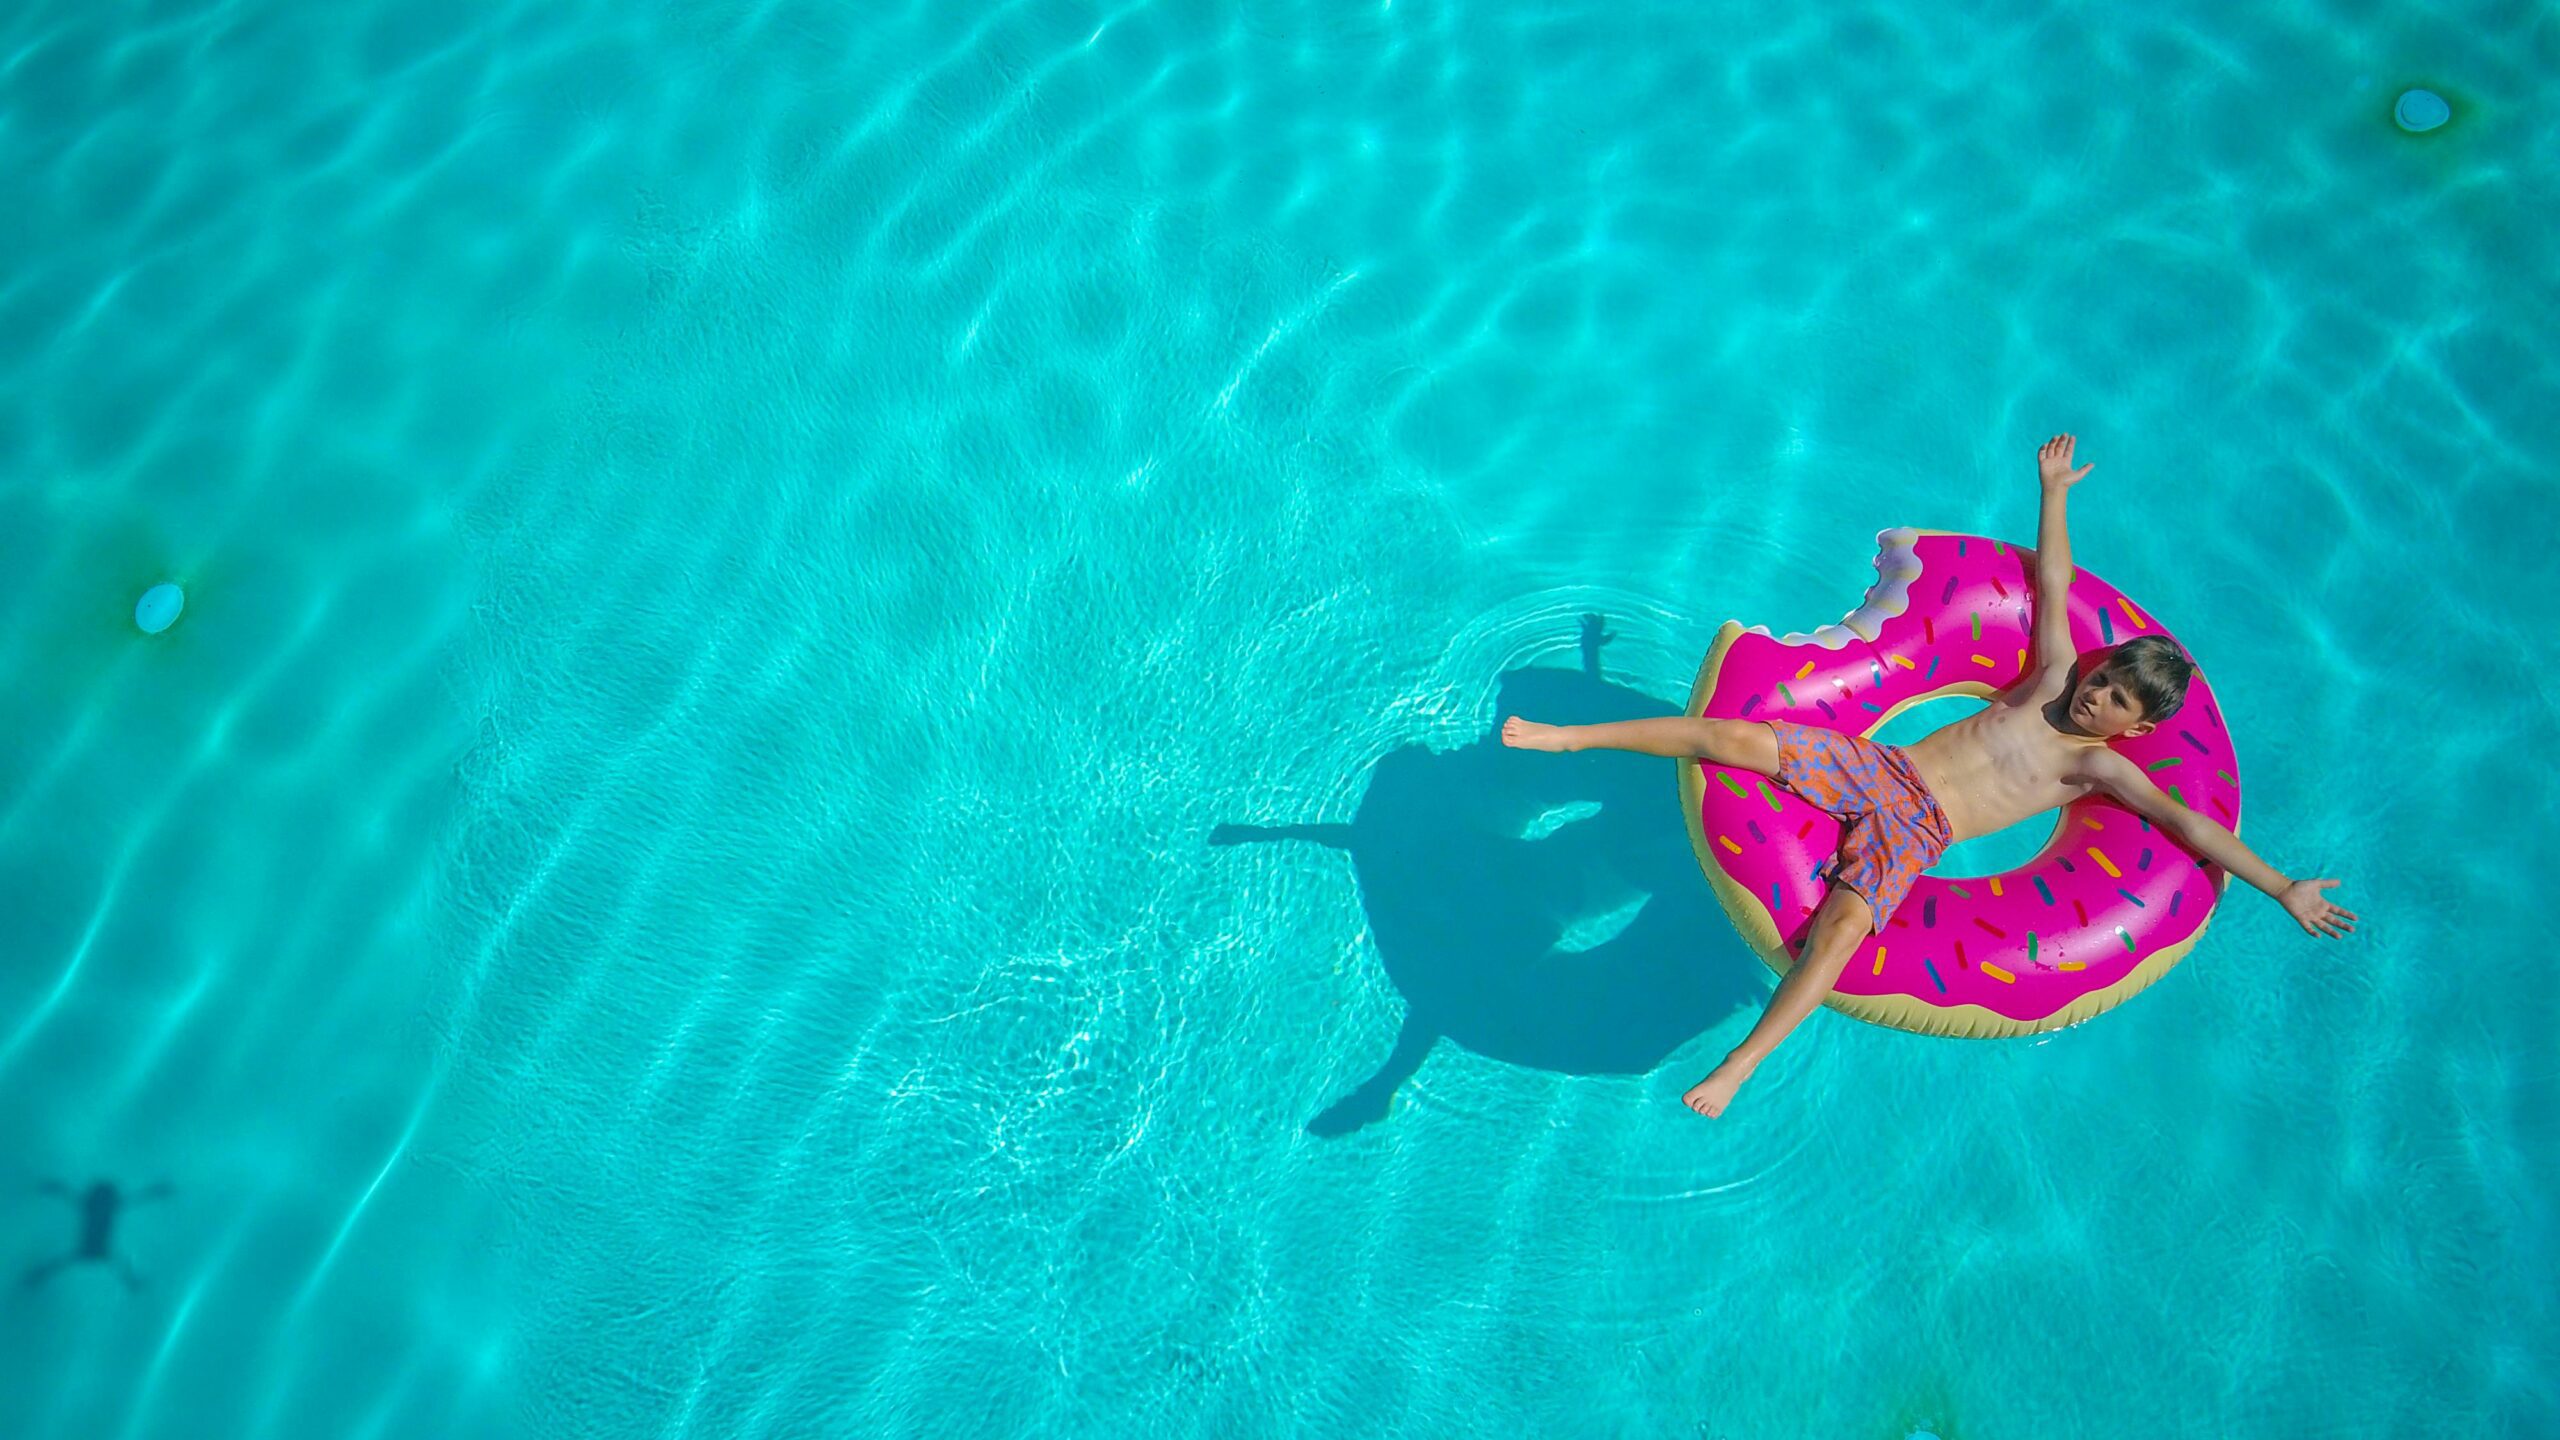 poika makaa uimahousuissa sinisessä vedessä vaaleanpunaisen uimarenkaan päällä kädet ja jalat levällä